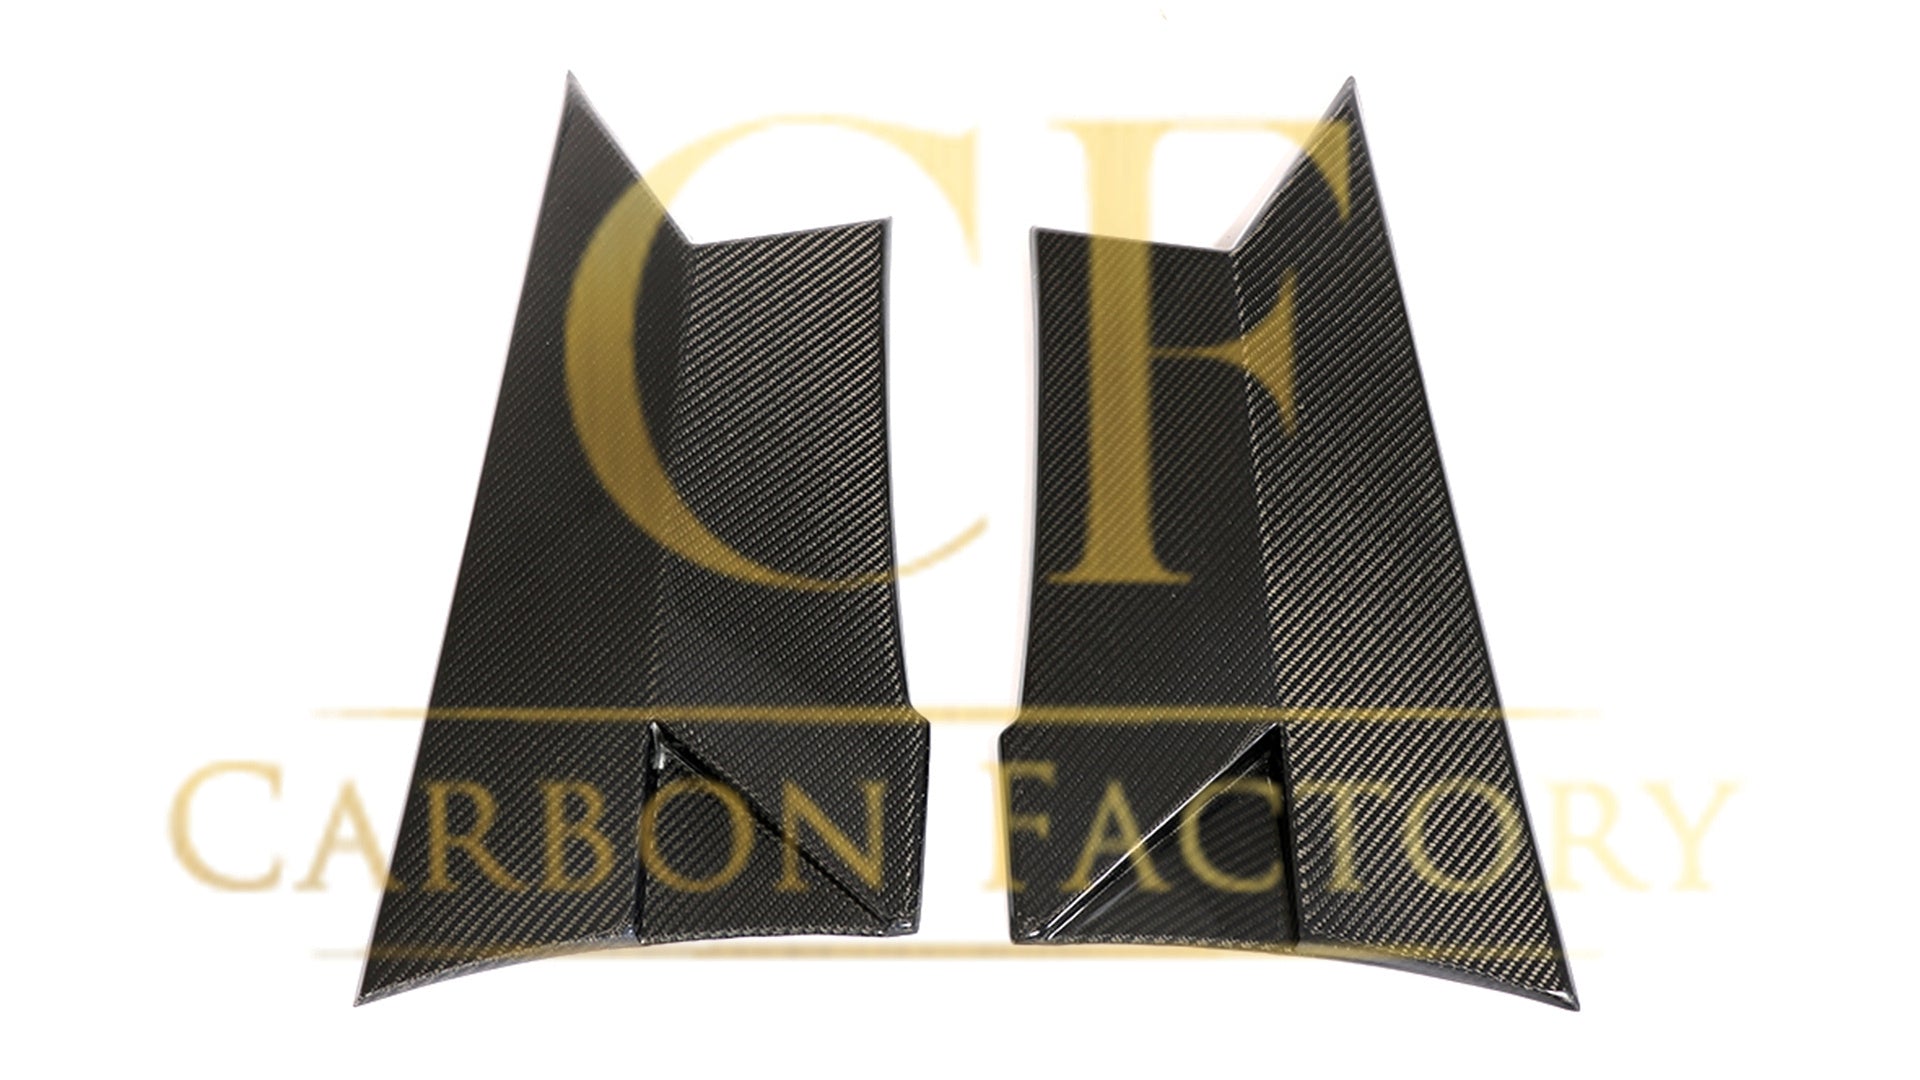 Mercedes W205 C63 C63s Coupe Carbon Fibre Side Skirt Trims 15-18-Carbon Factory